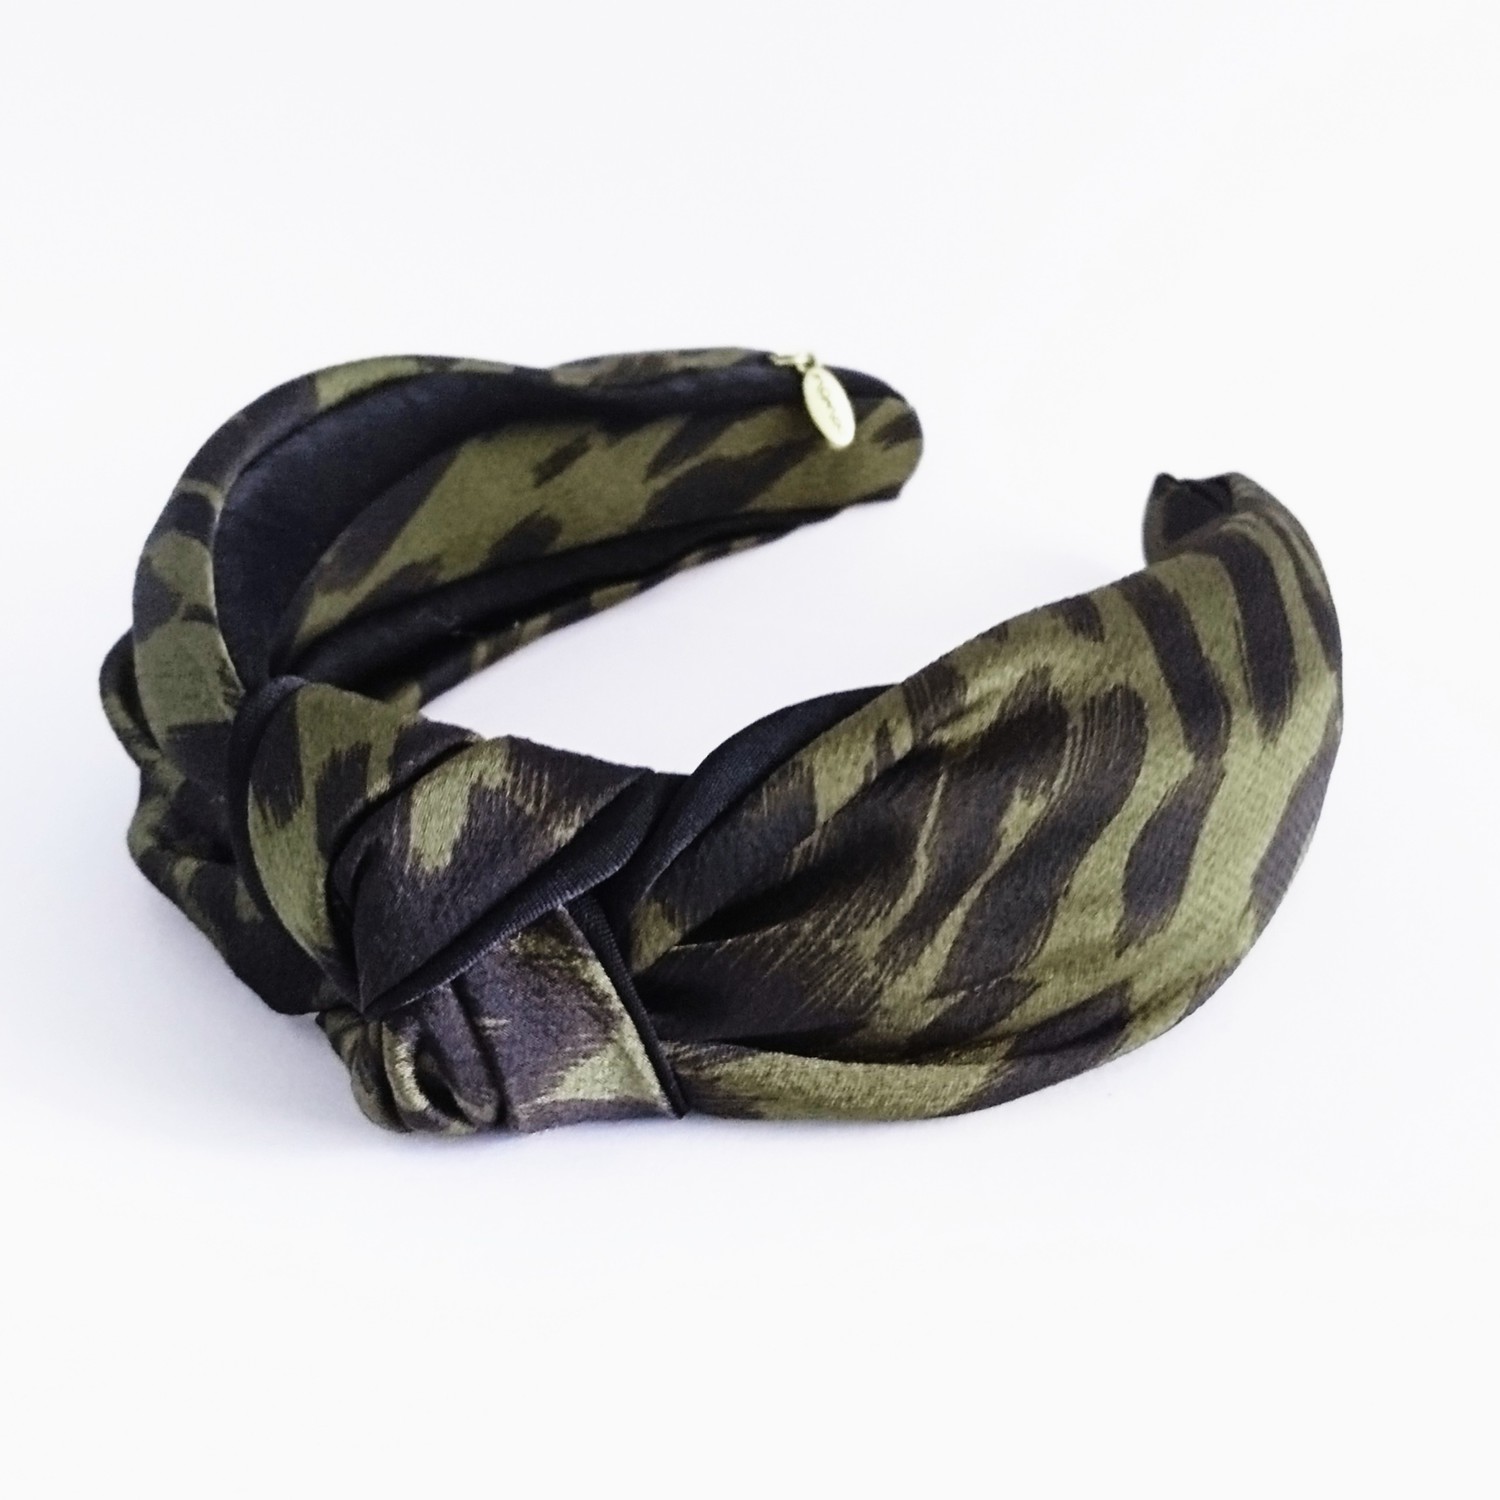  Hårbøyle knute exclusive leopard - oliven/sort